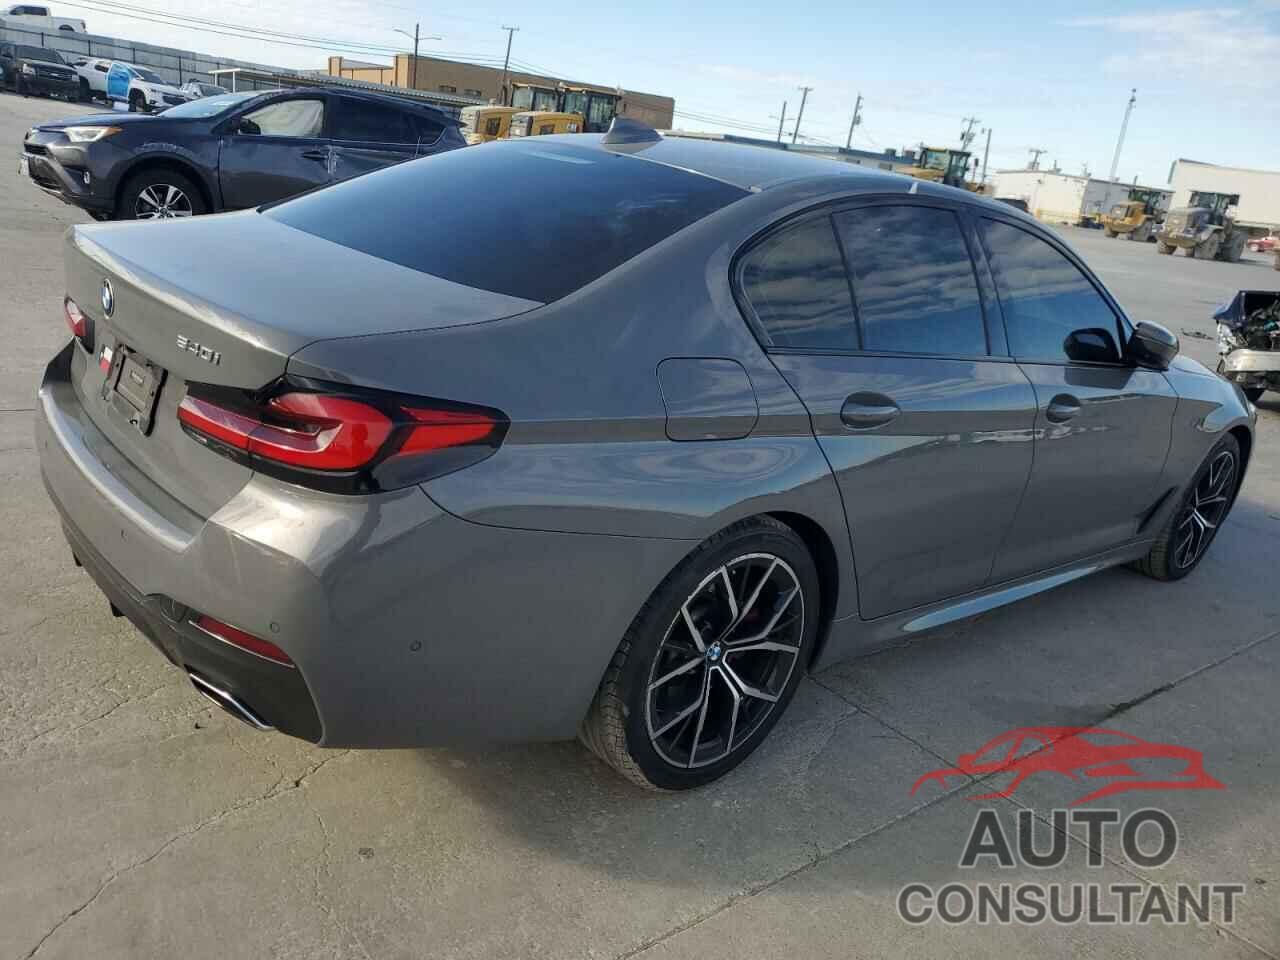 BMW 5 SERIES 2021 - WBA53BJ08MWX33078